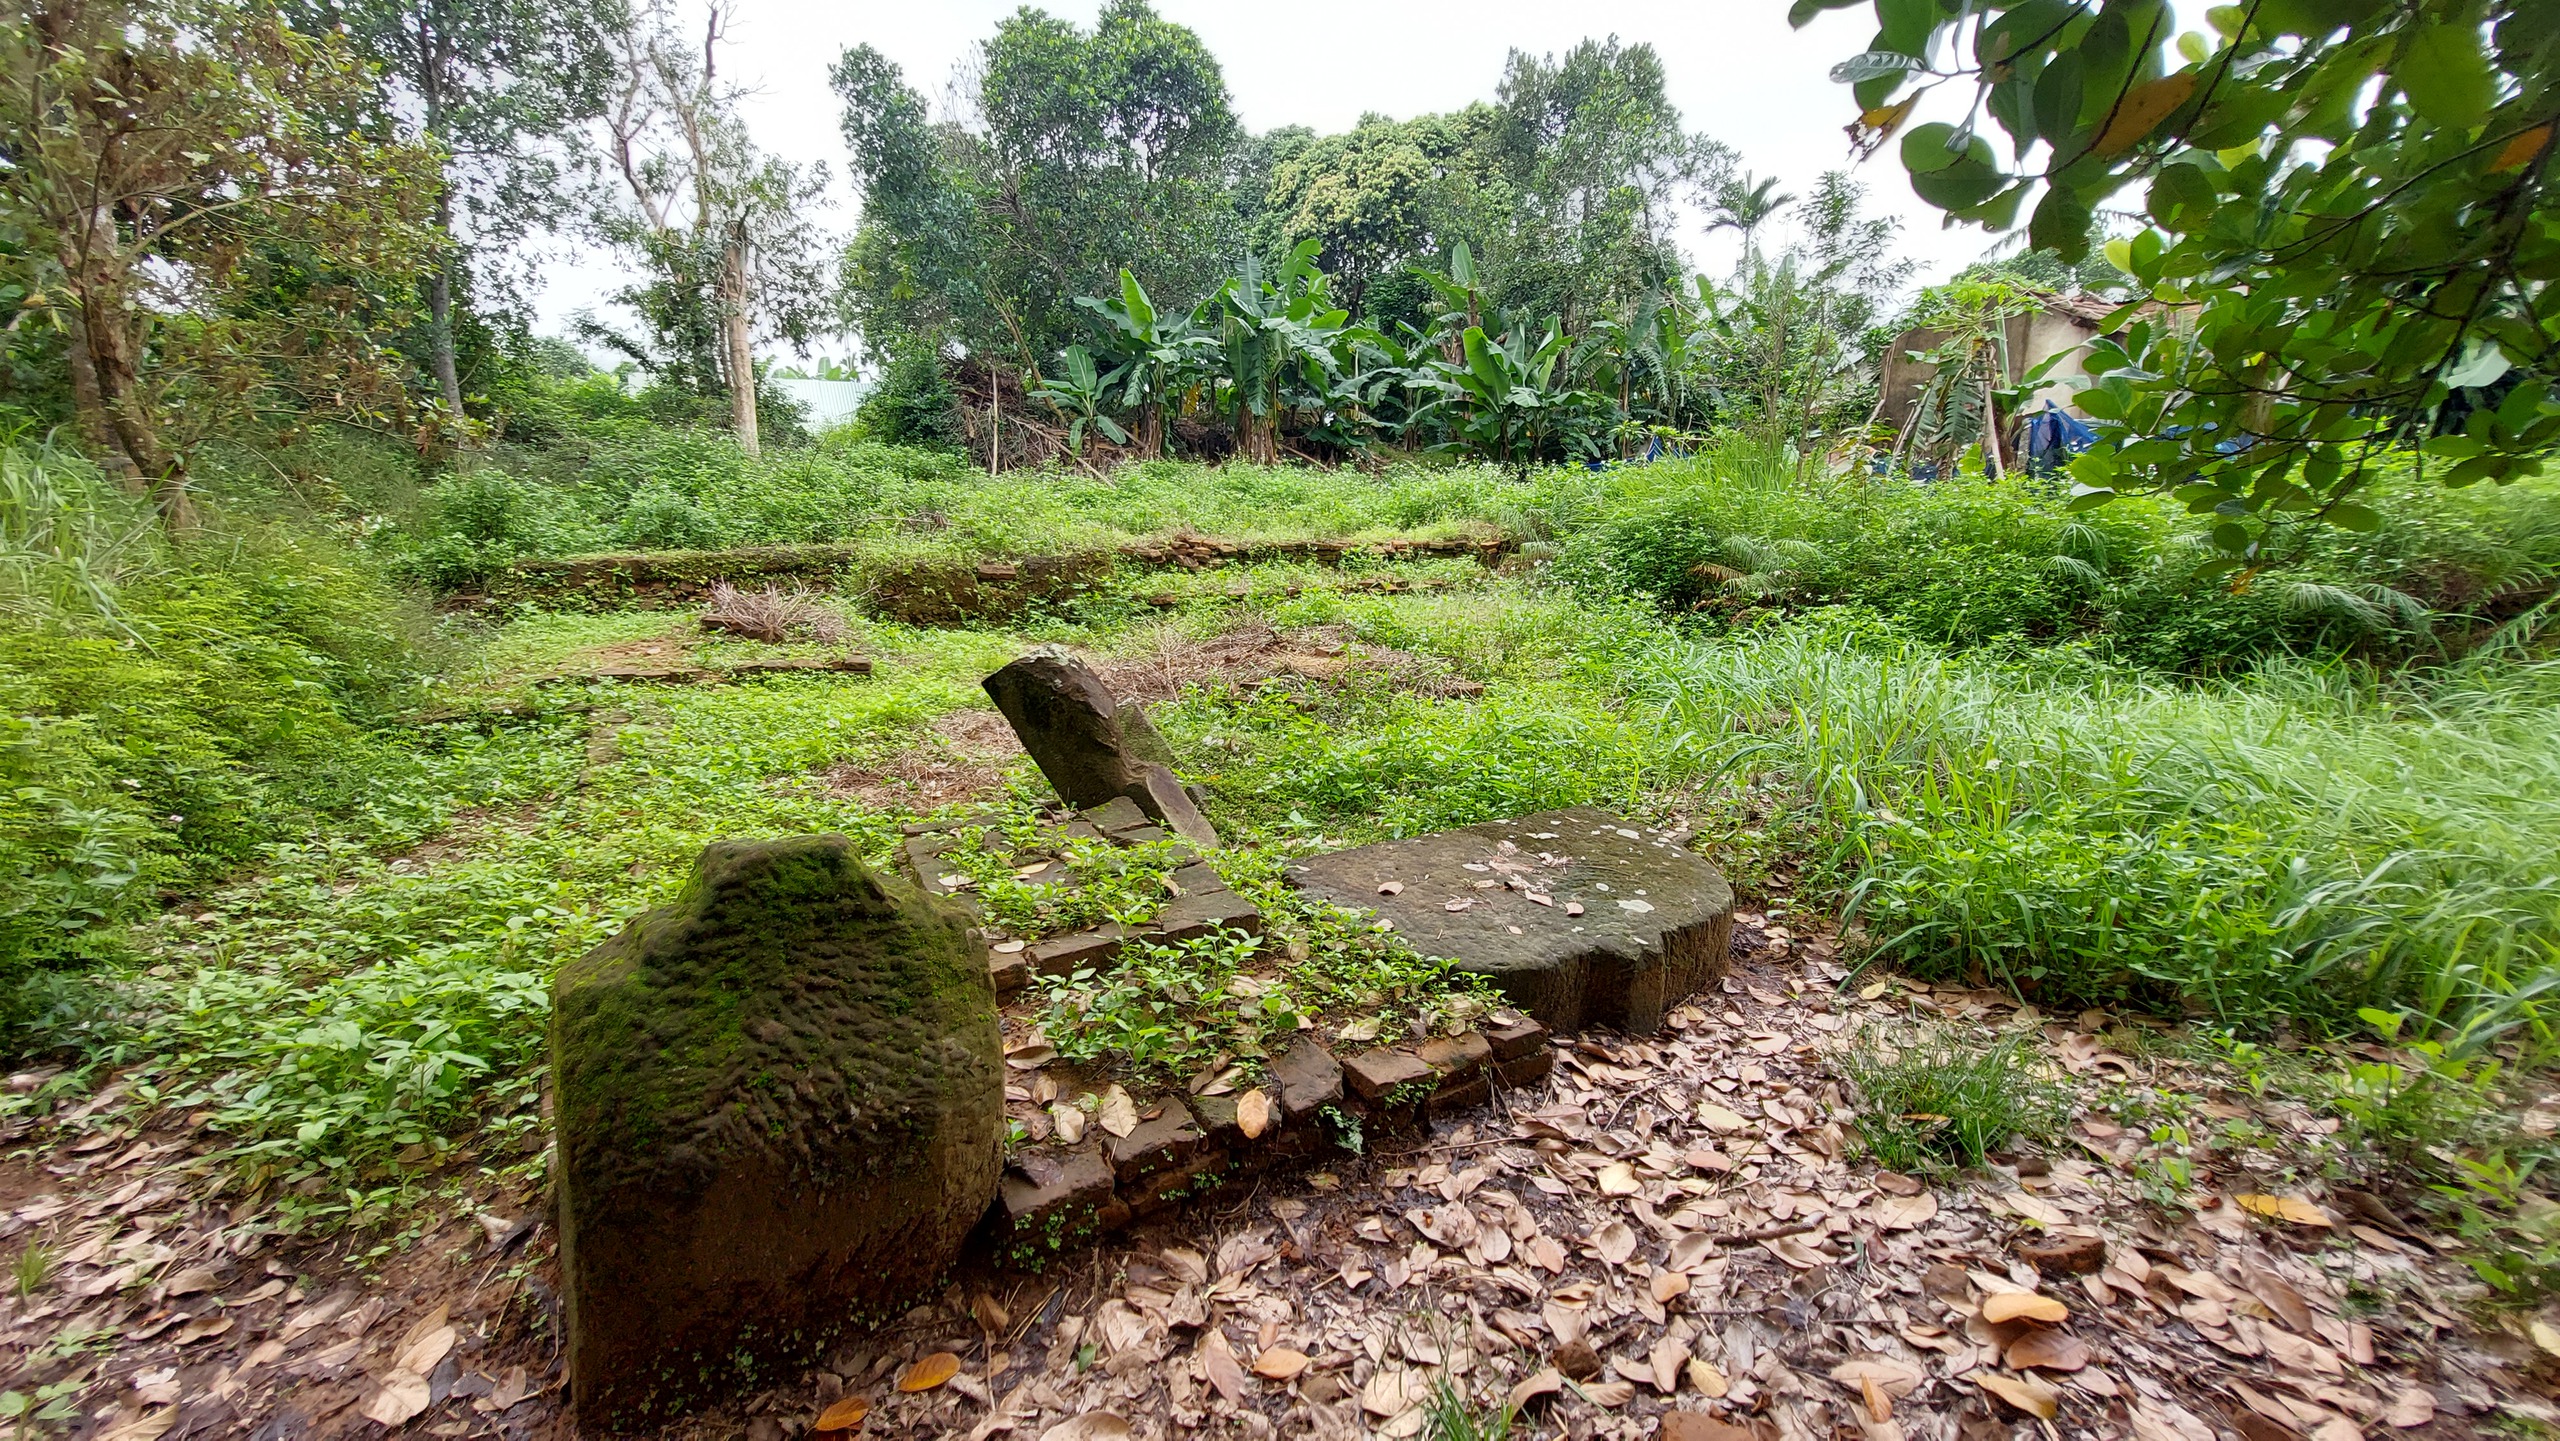 Di tích khảo cổ Chqmw Phong Lệ rơi vào cảnh hoang hóa do dự án Bảo tàng Điêu khắc Chăm cơ sở 2 – giai đoạn 1 chậm tiến độ